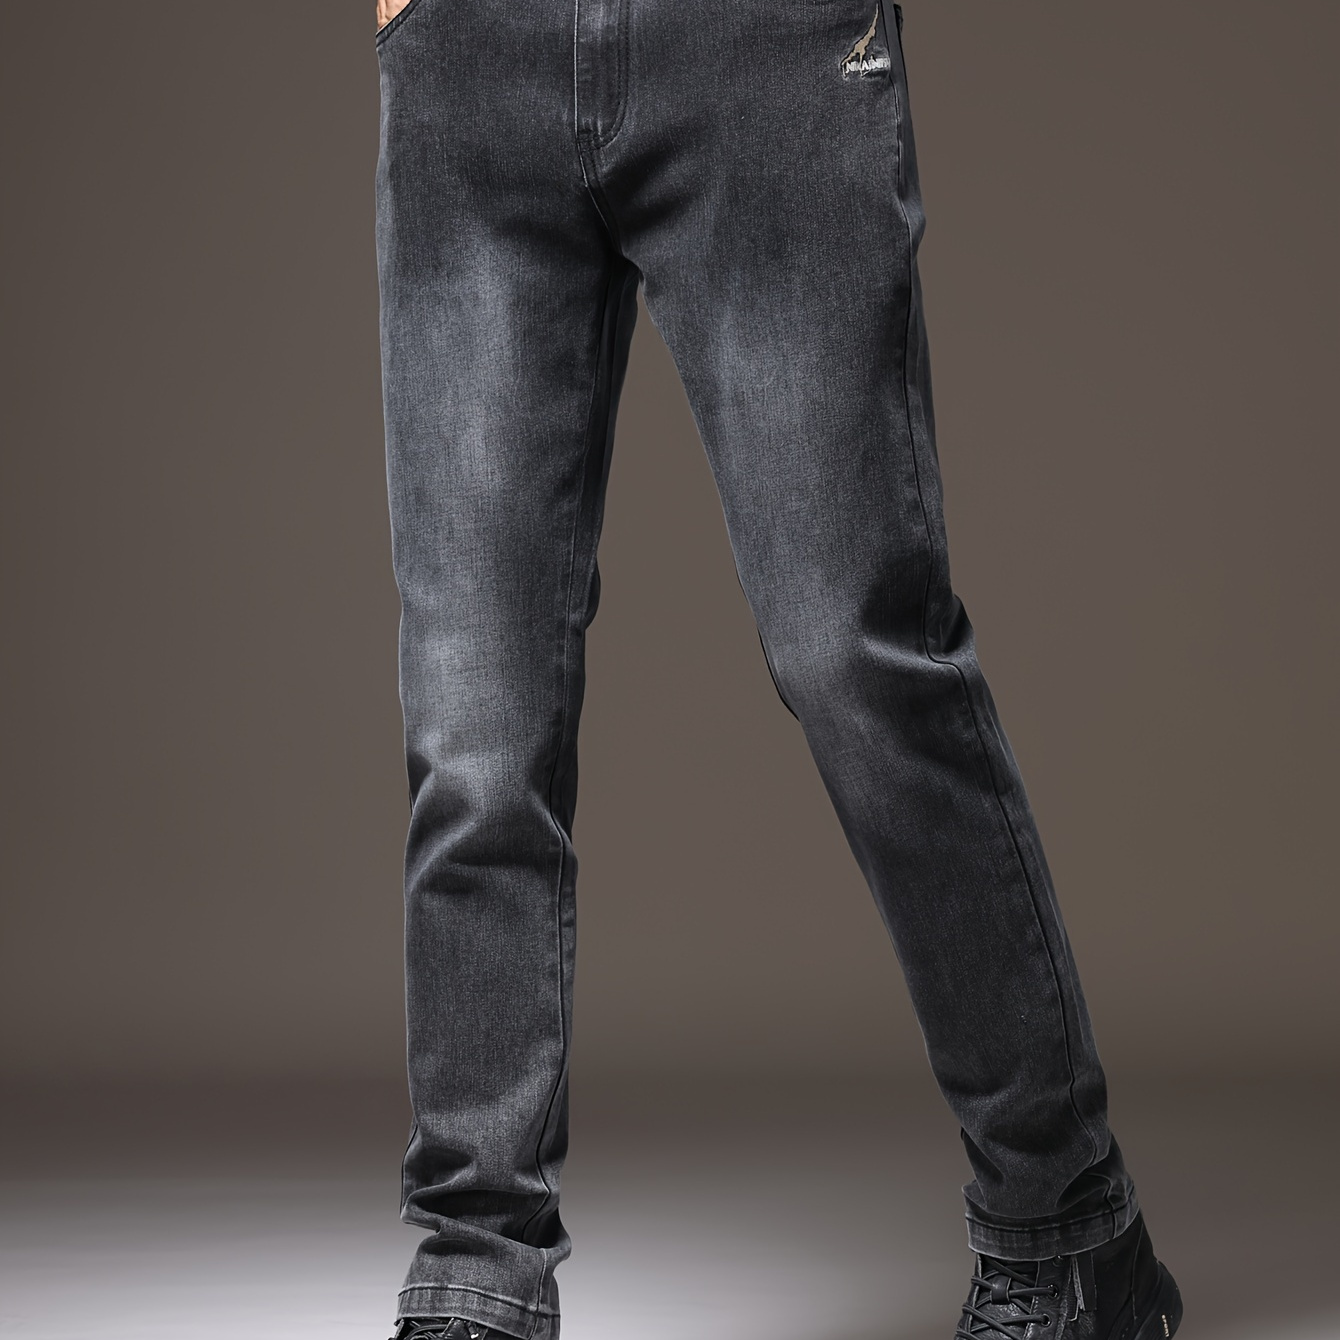 Men's Semi formal Skinny Pants Fall Winter Business - Temu